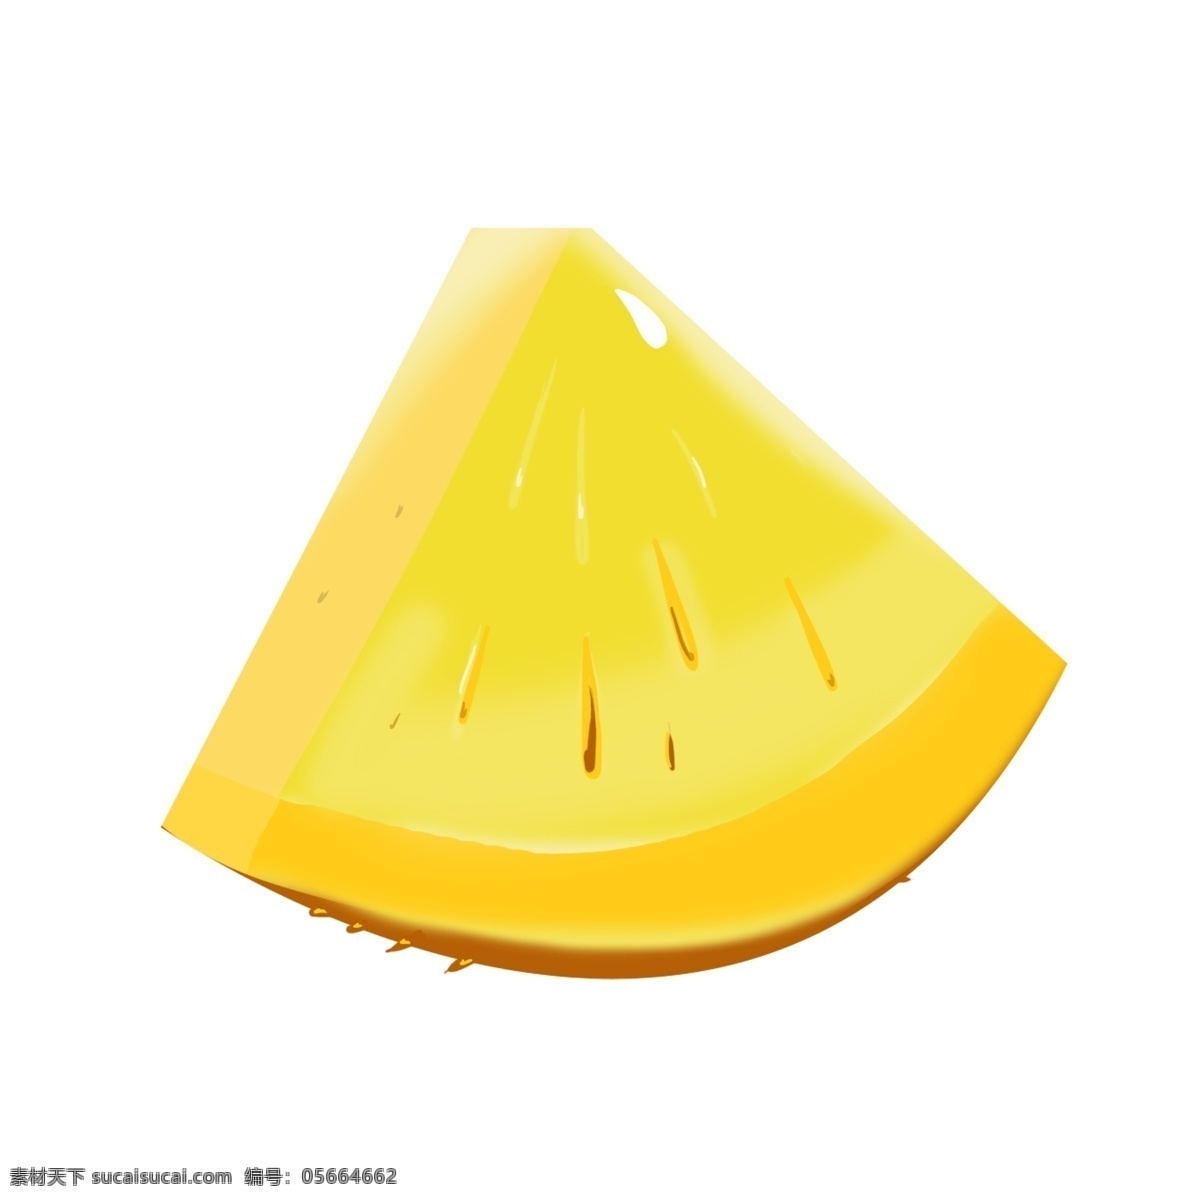 黄色 切开 菠萝 水果 酸甜